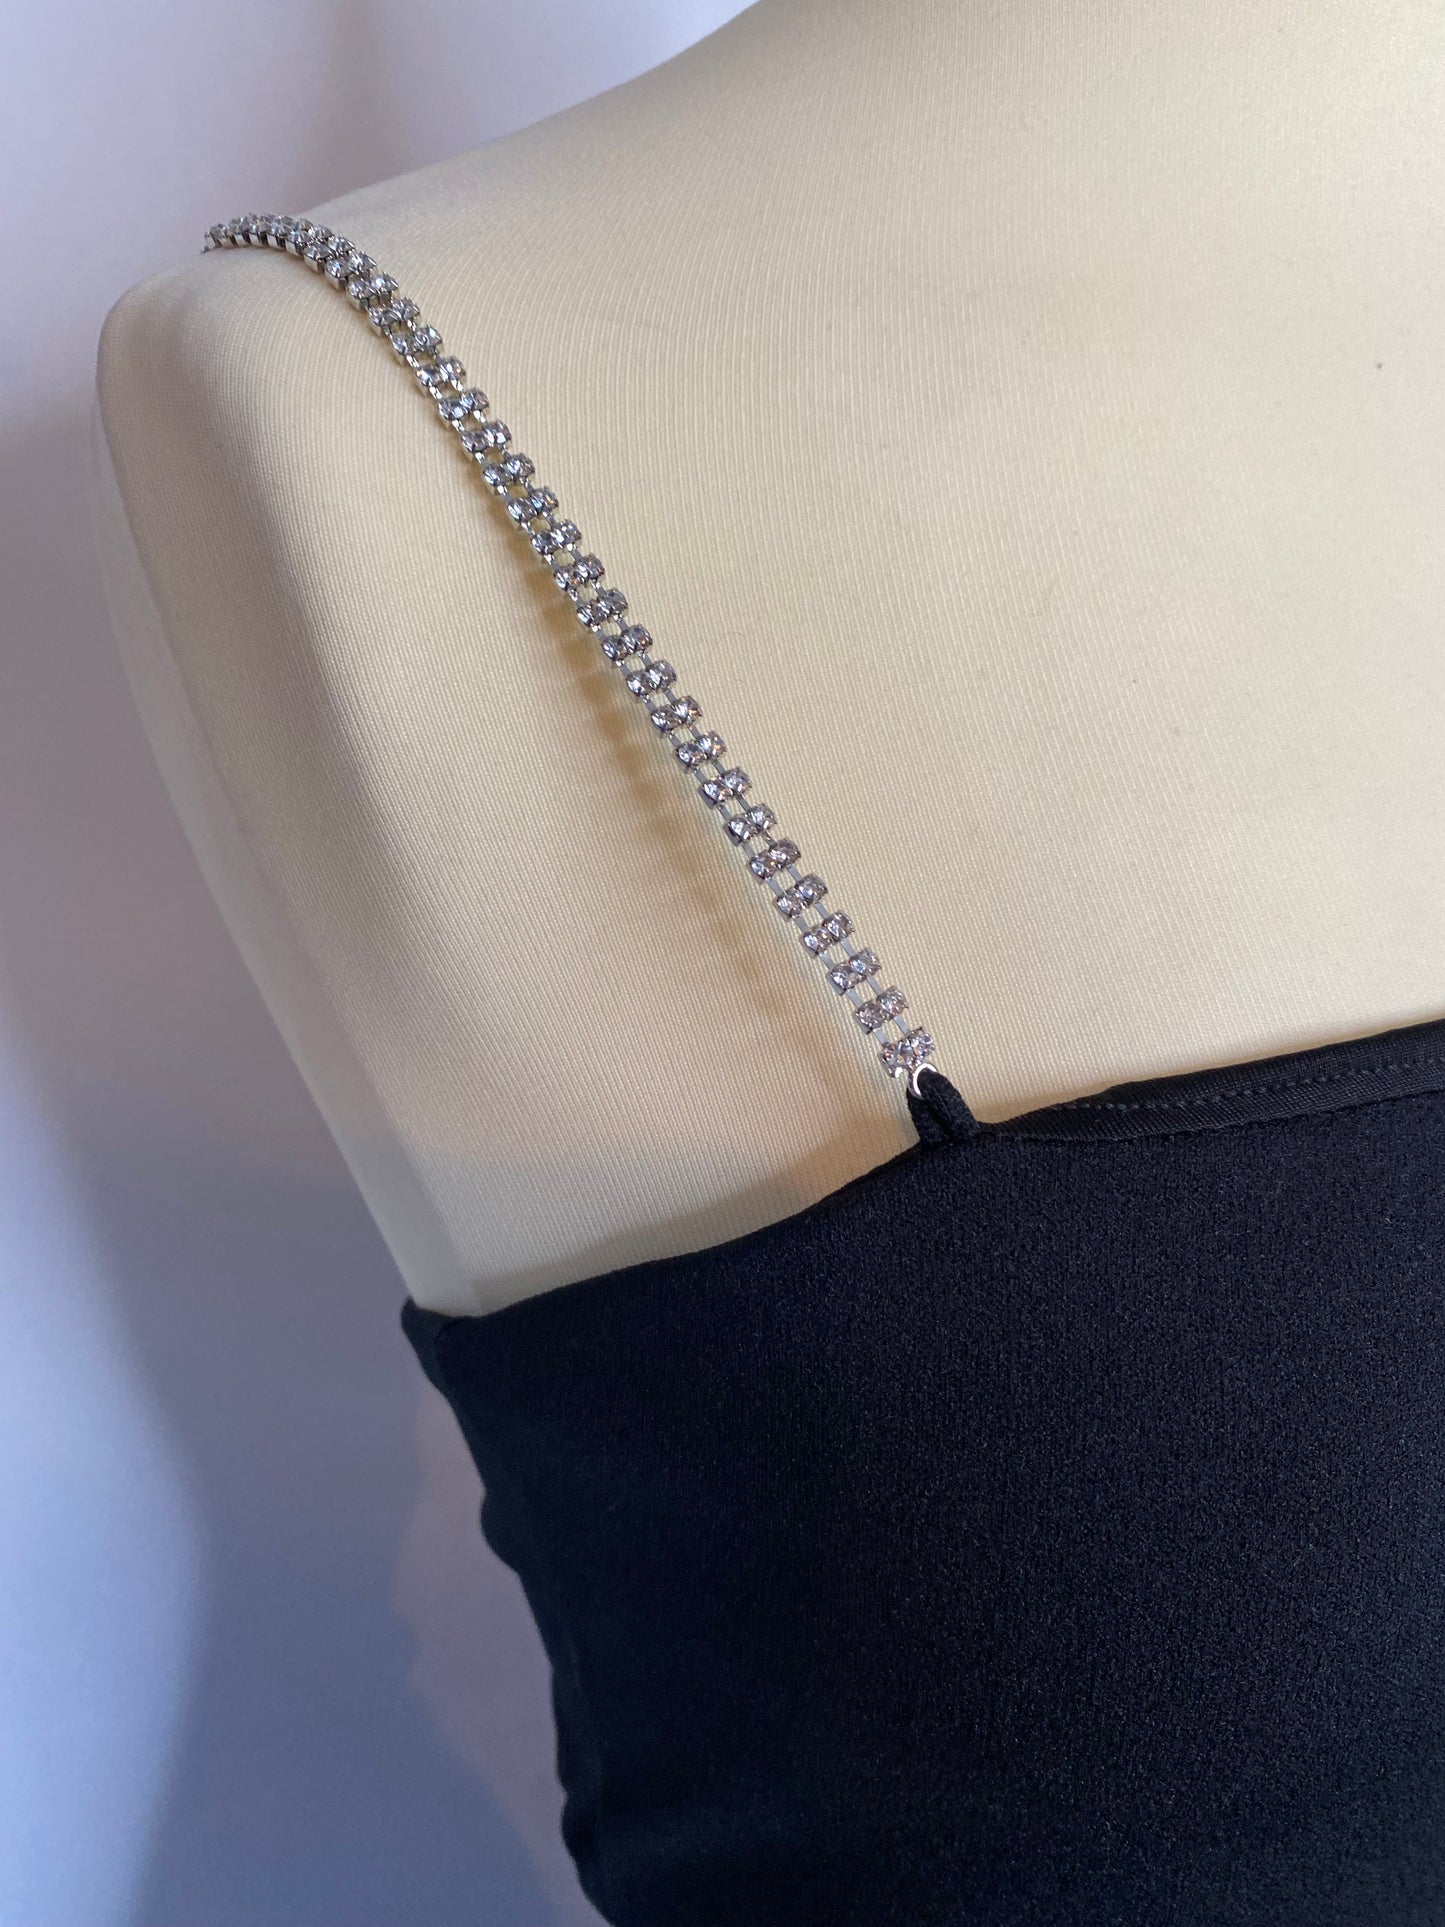 H&M - XS 6 - black diamanté strap bodycon mini dress